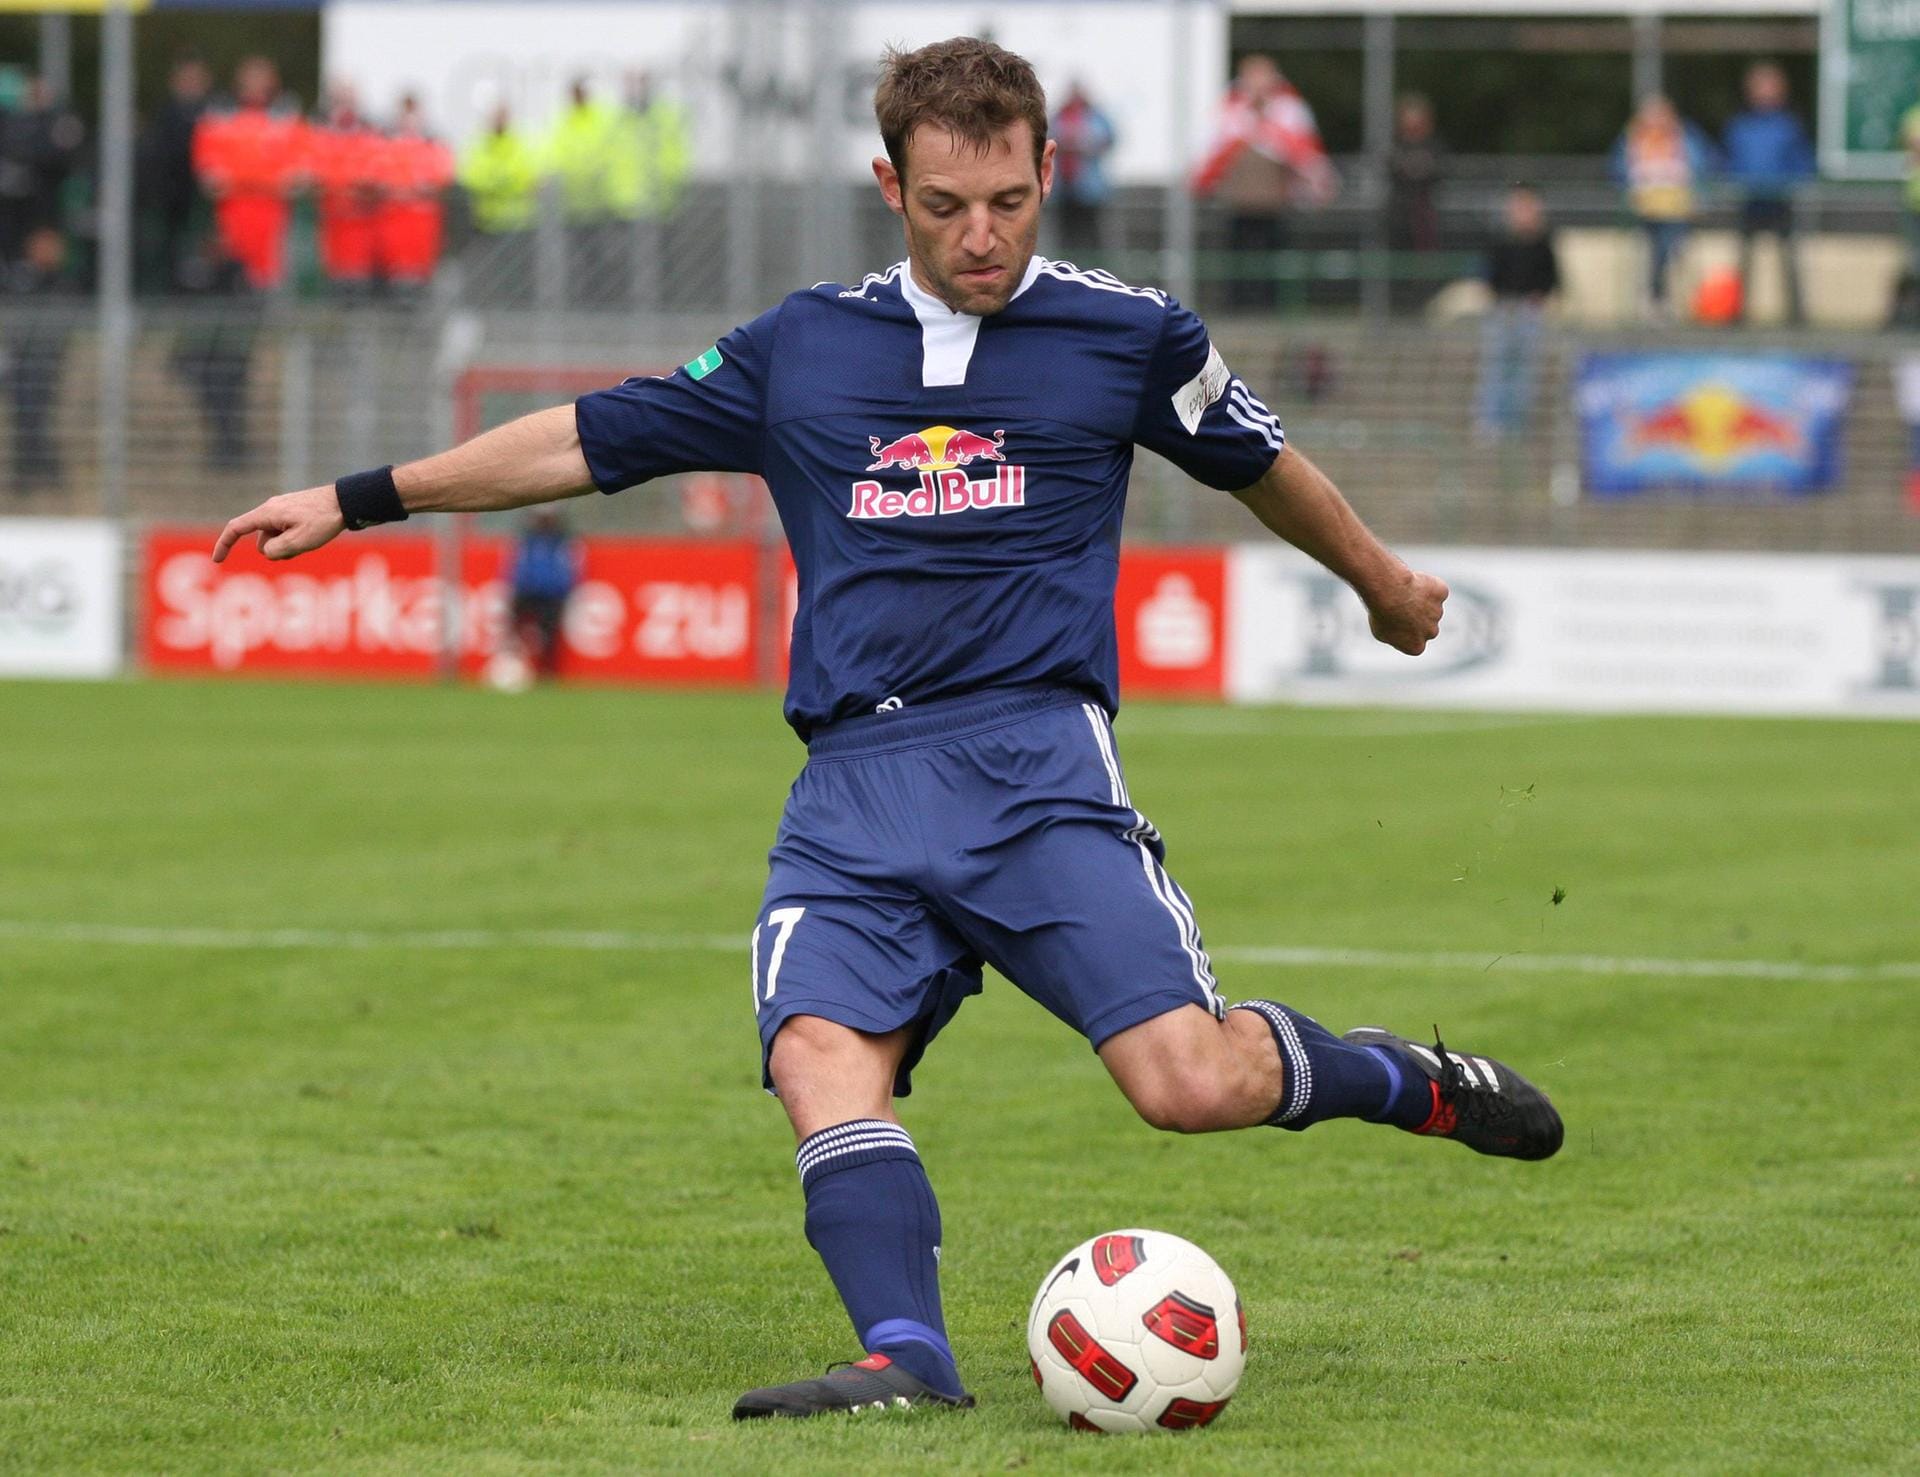 Lars Müller (2009-2011): Mit 116 Bundesligaeinsätzen für Nürnberg und Dortmund kam er als erfahrener Routinier im Debüt-Jahr 2009 zu RB. Zwei Saisons lang war der Linksverteidiger unumstrittener Leistungsträger. Seine Karriere nahm inzwischen ein Ende und er stieg in die Trainerlaufbahn beim Werner SC ein.